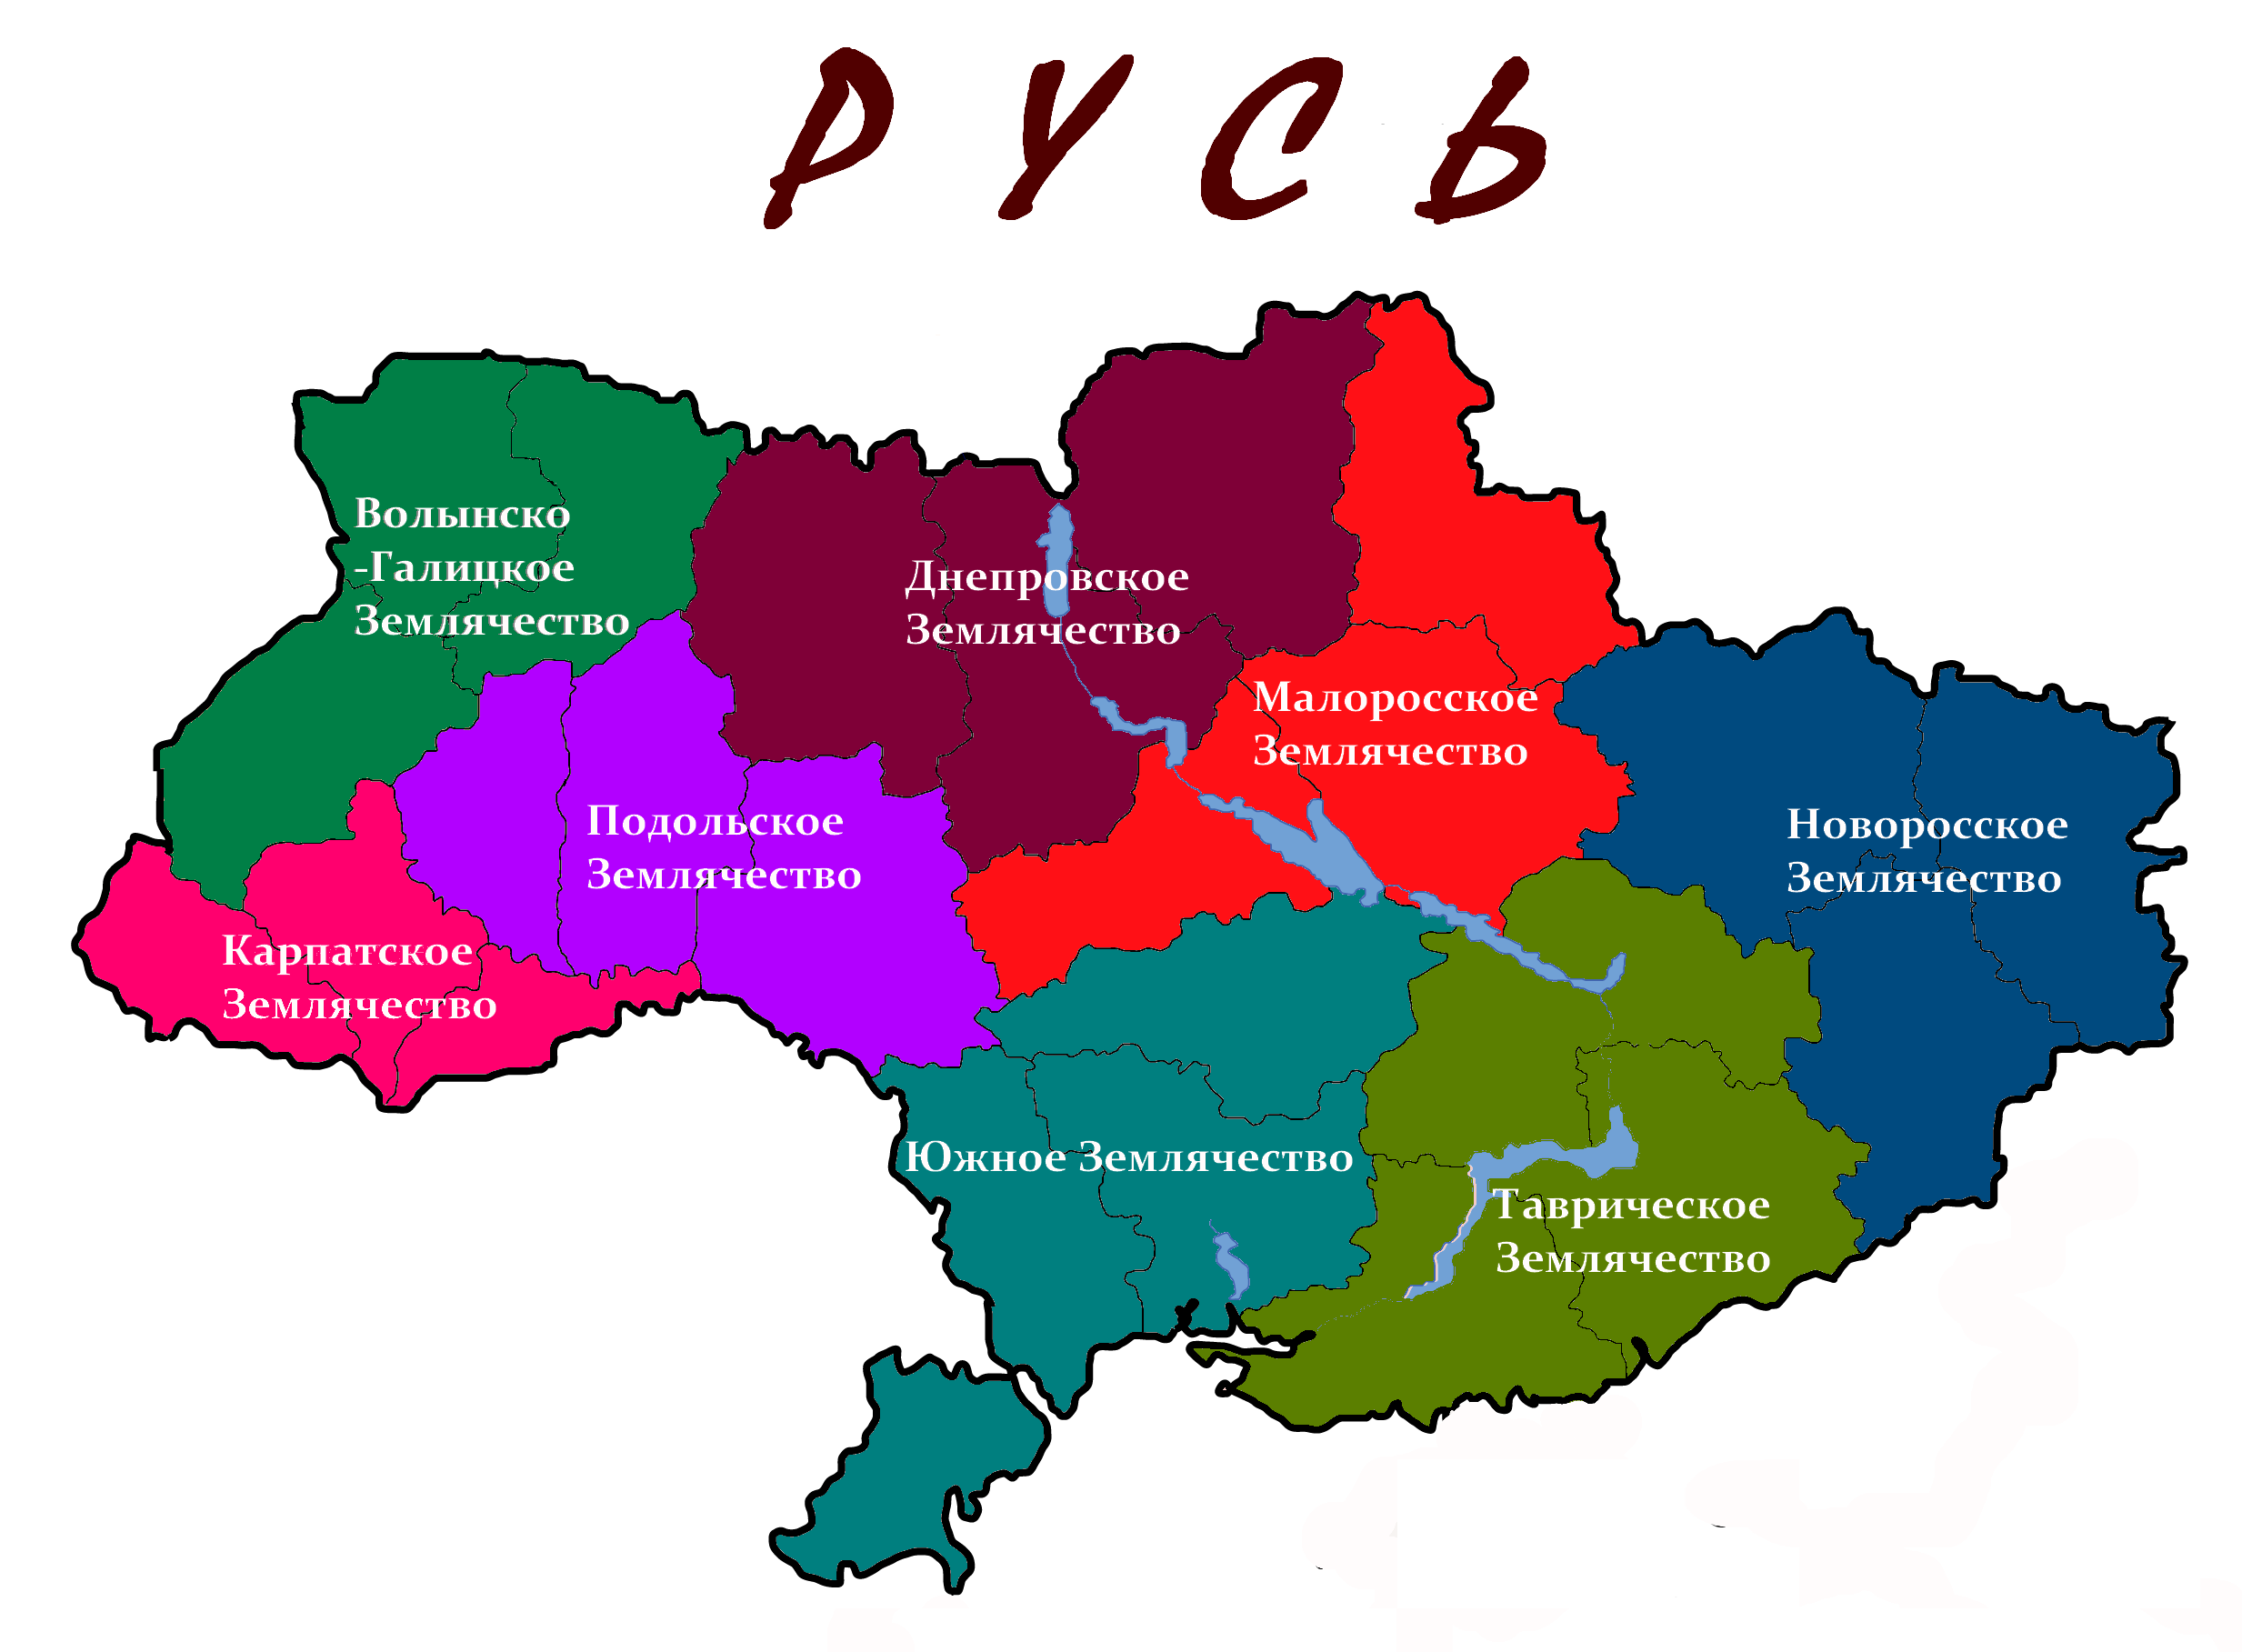 Украина 5 областей. Карта Украины. Регионы Украины. Административная карта Украины. Региональная карта Украины.